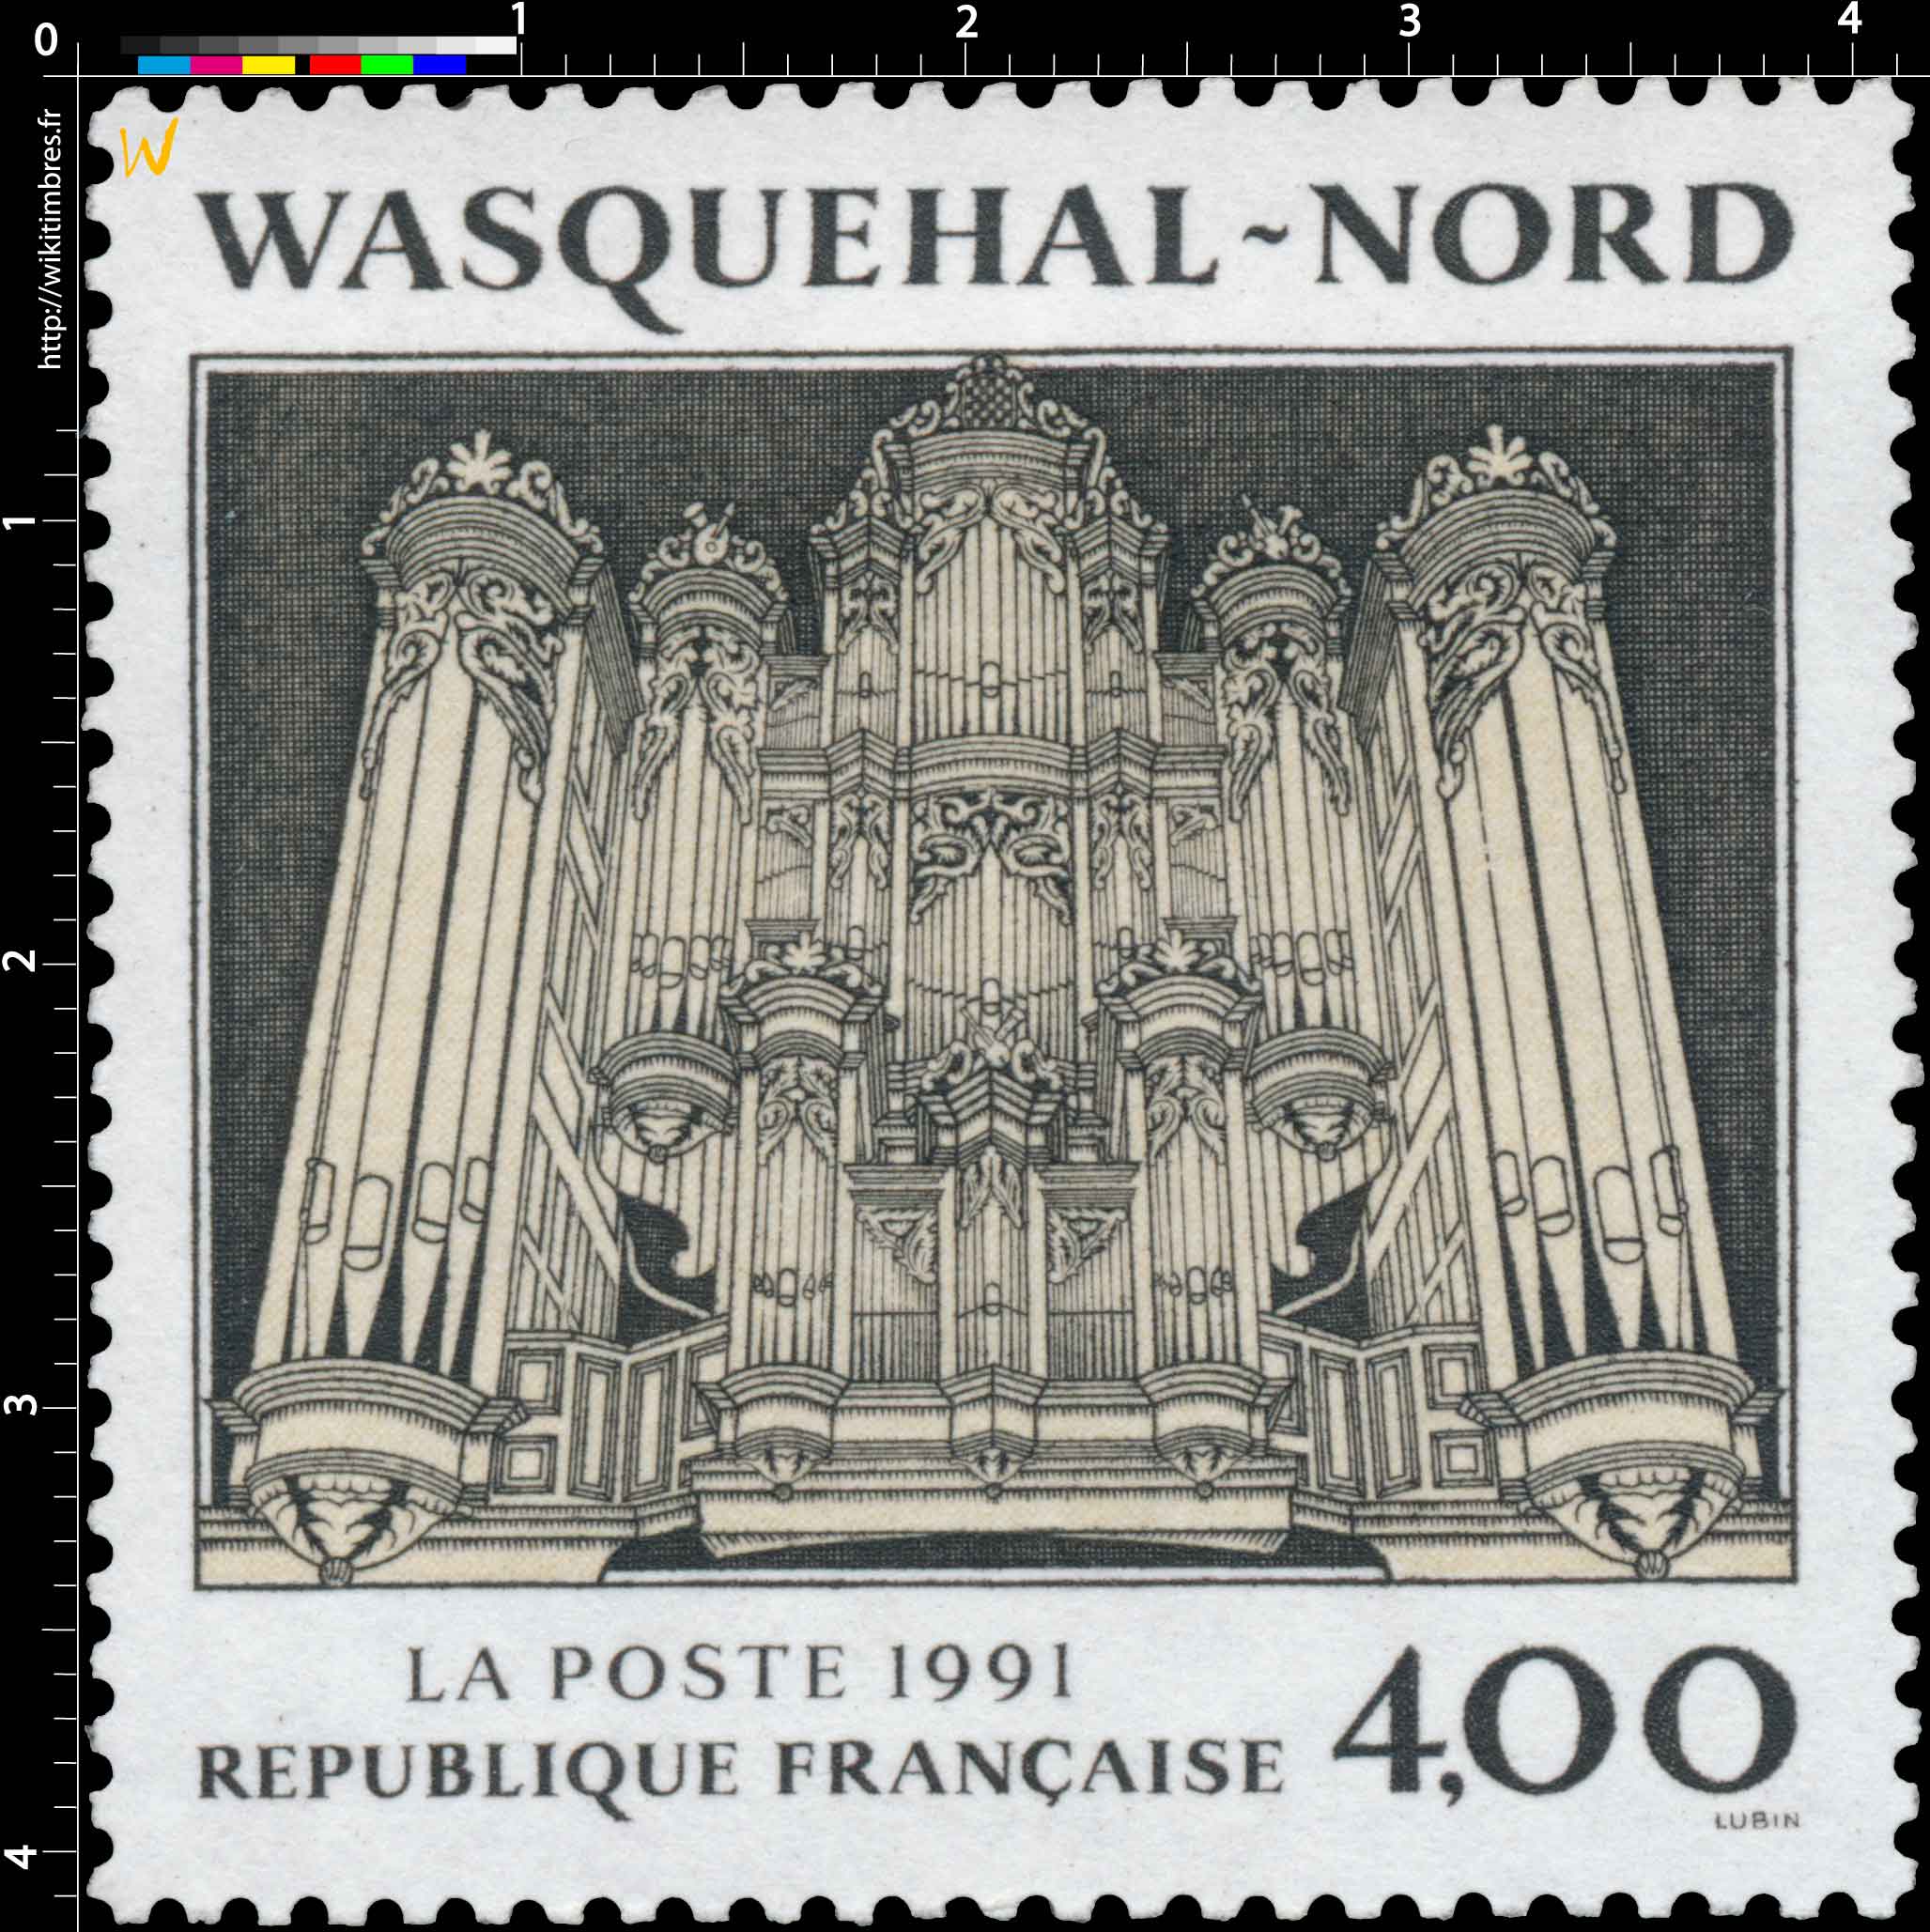 1991 WASQUEHAL - NORD